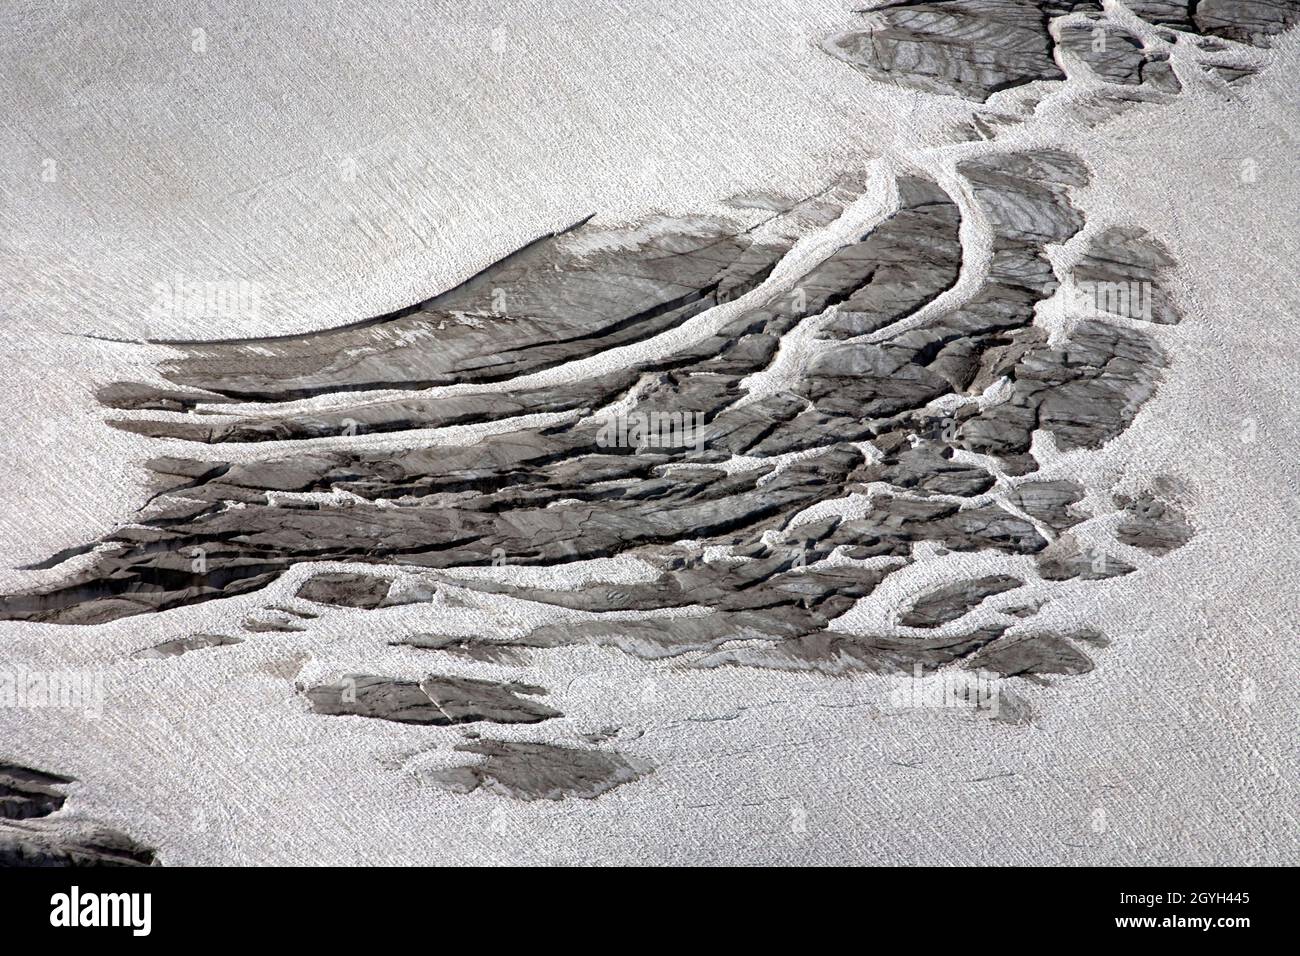 Dettagli sul ghiacciaio Rettenbach Foto Stock